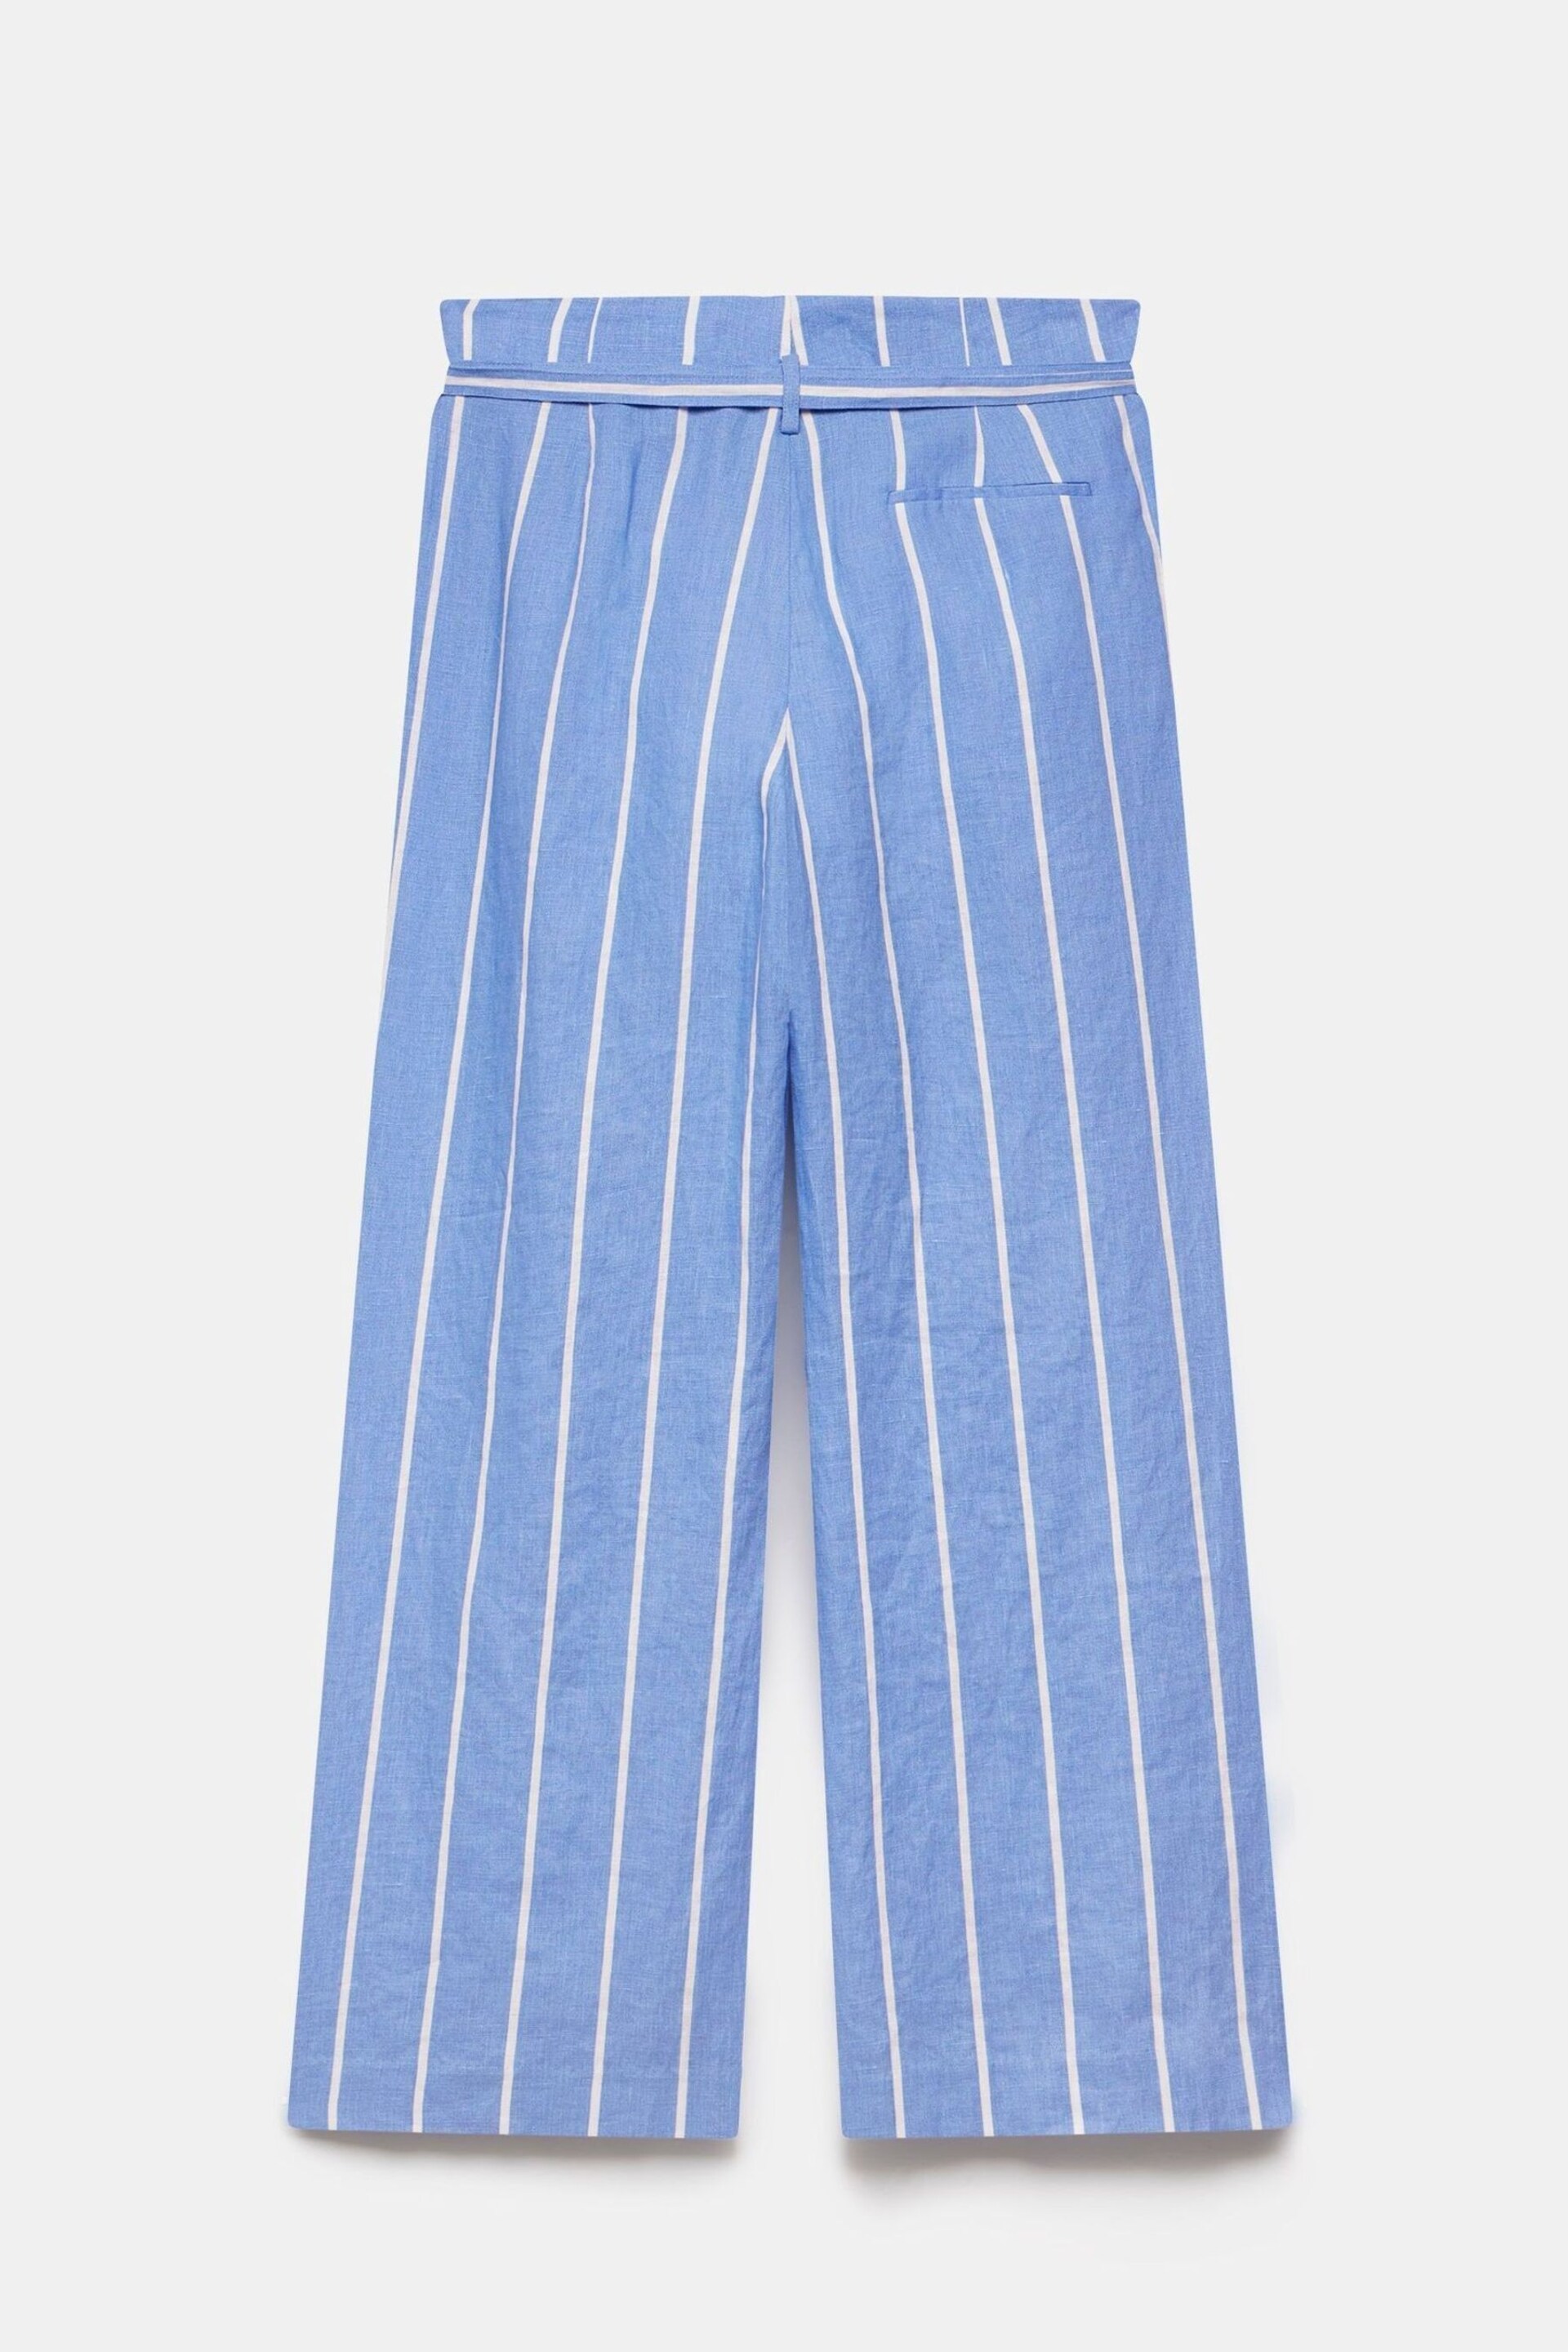 Mint Velvet Blue Striped Linen Trousers - Image 4 of 4